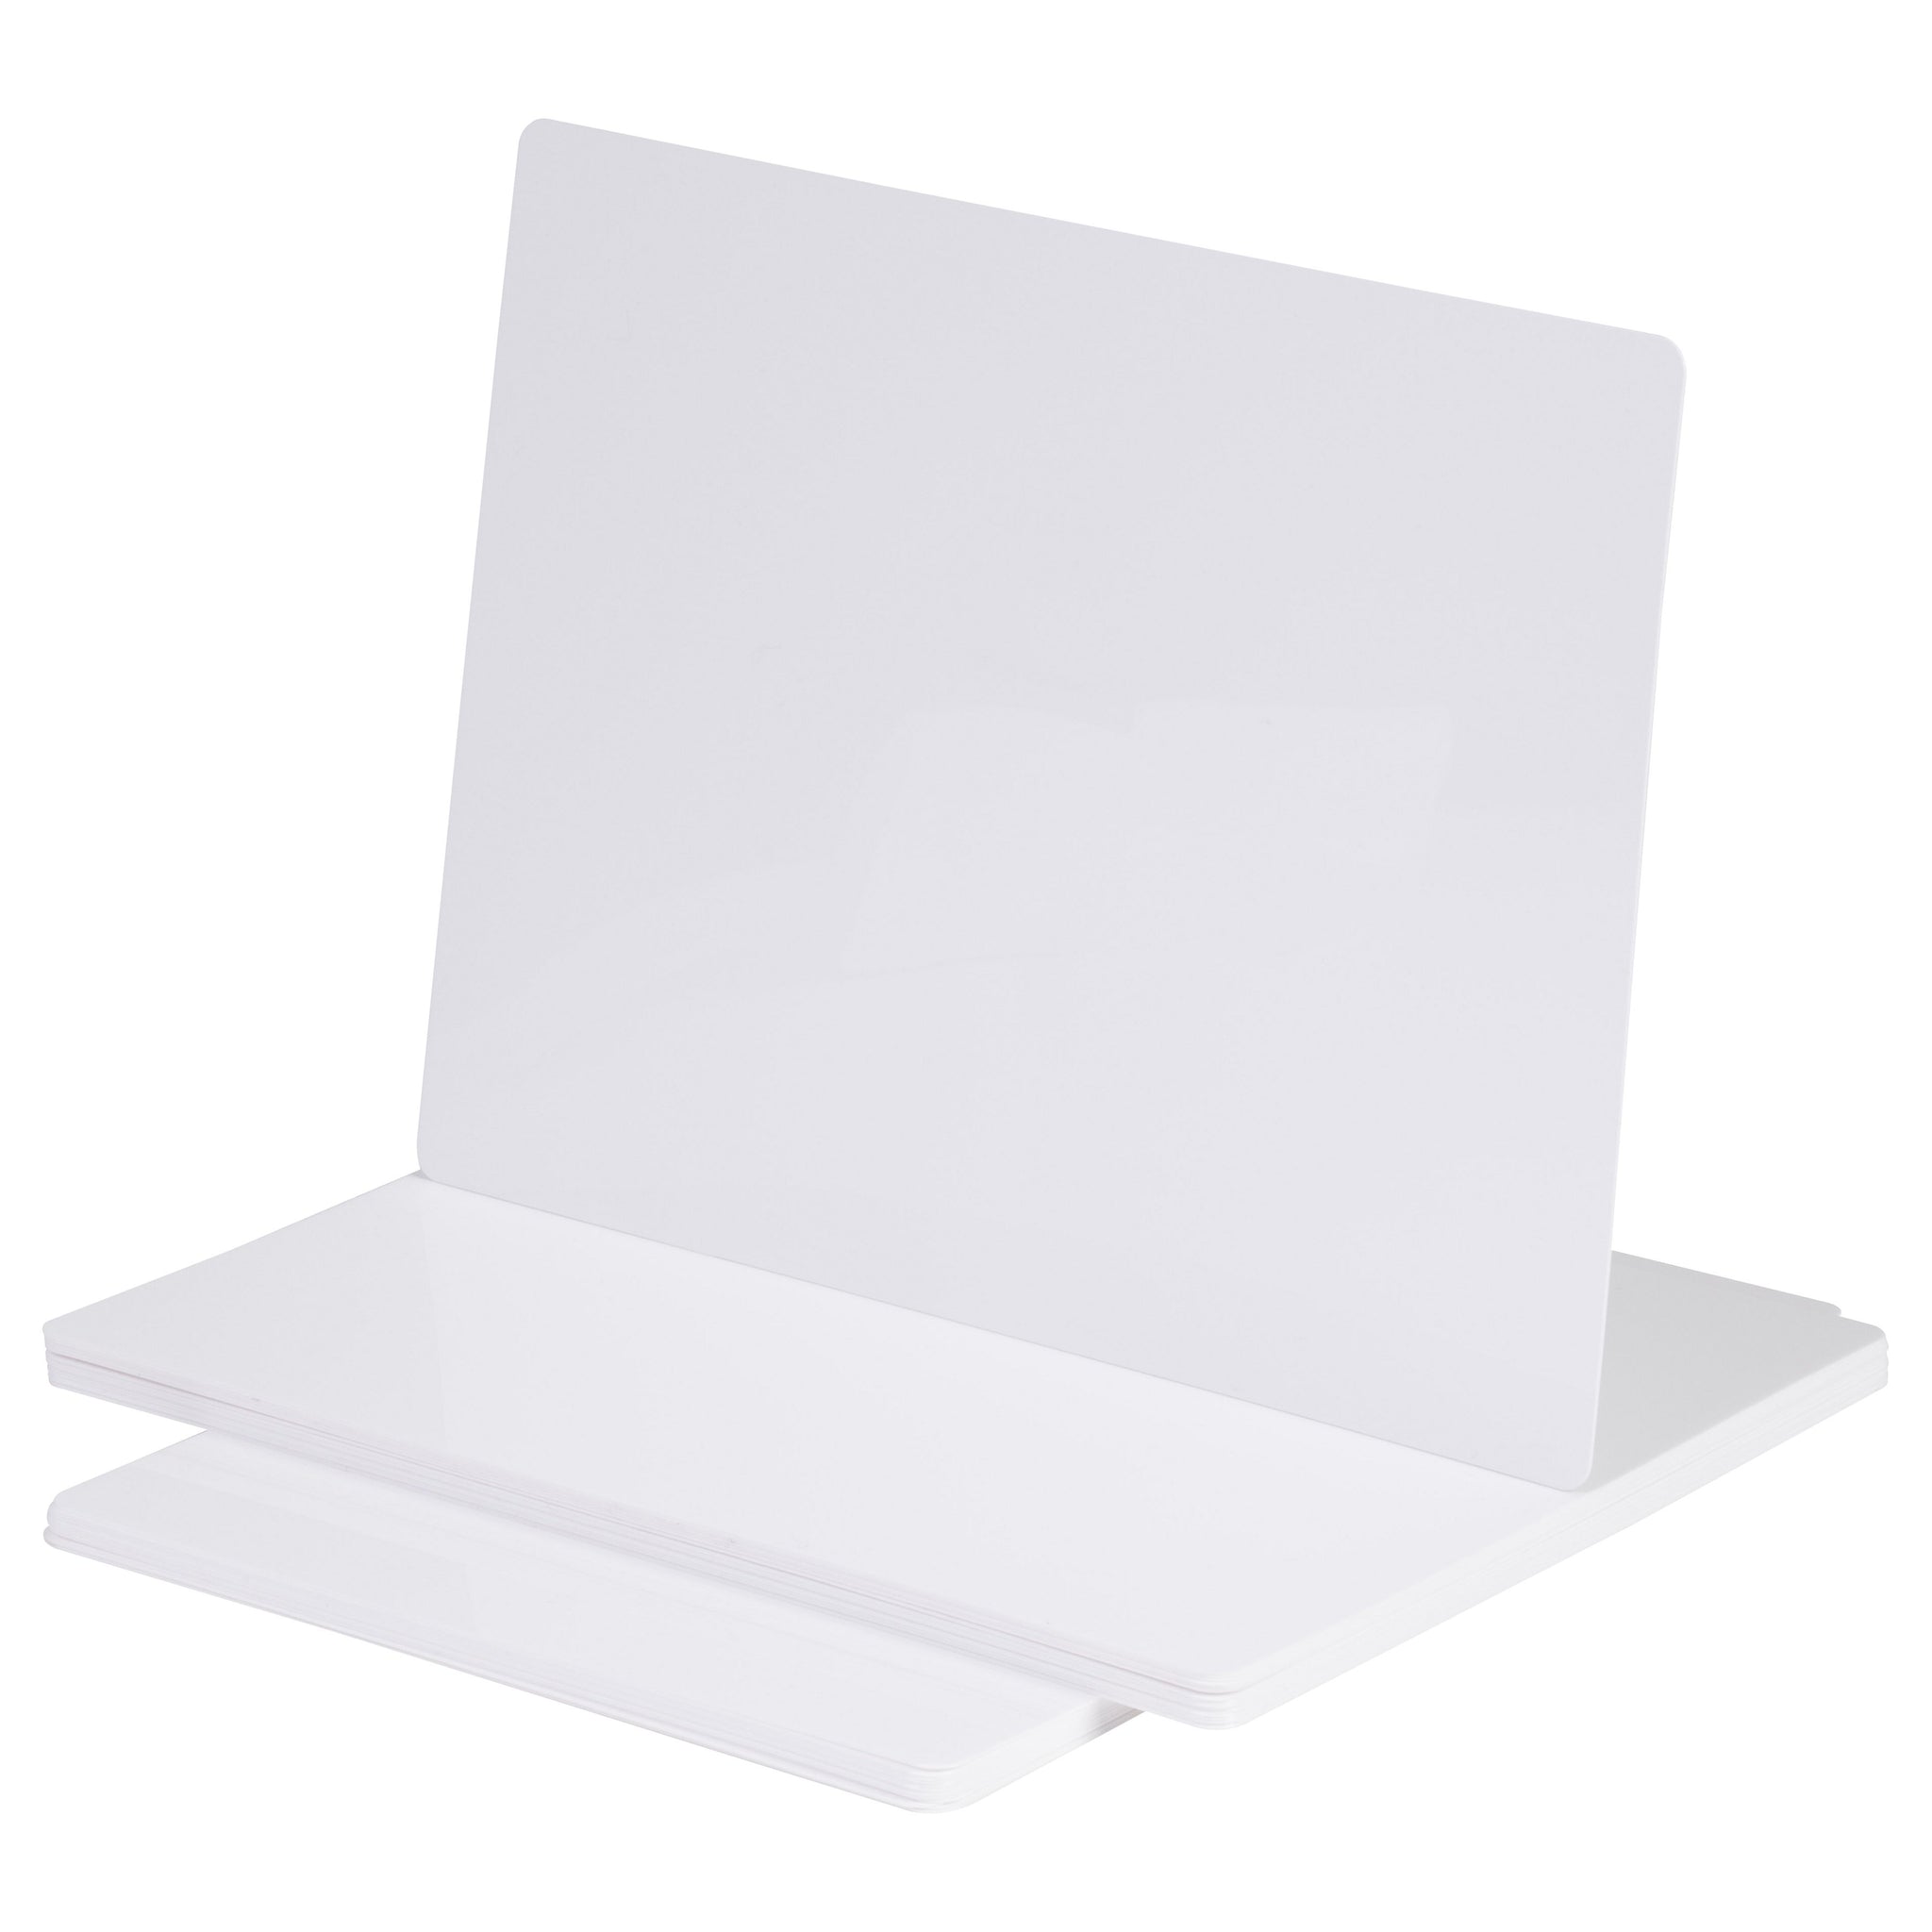 A4 Flexible Plain Whiteboard PK30